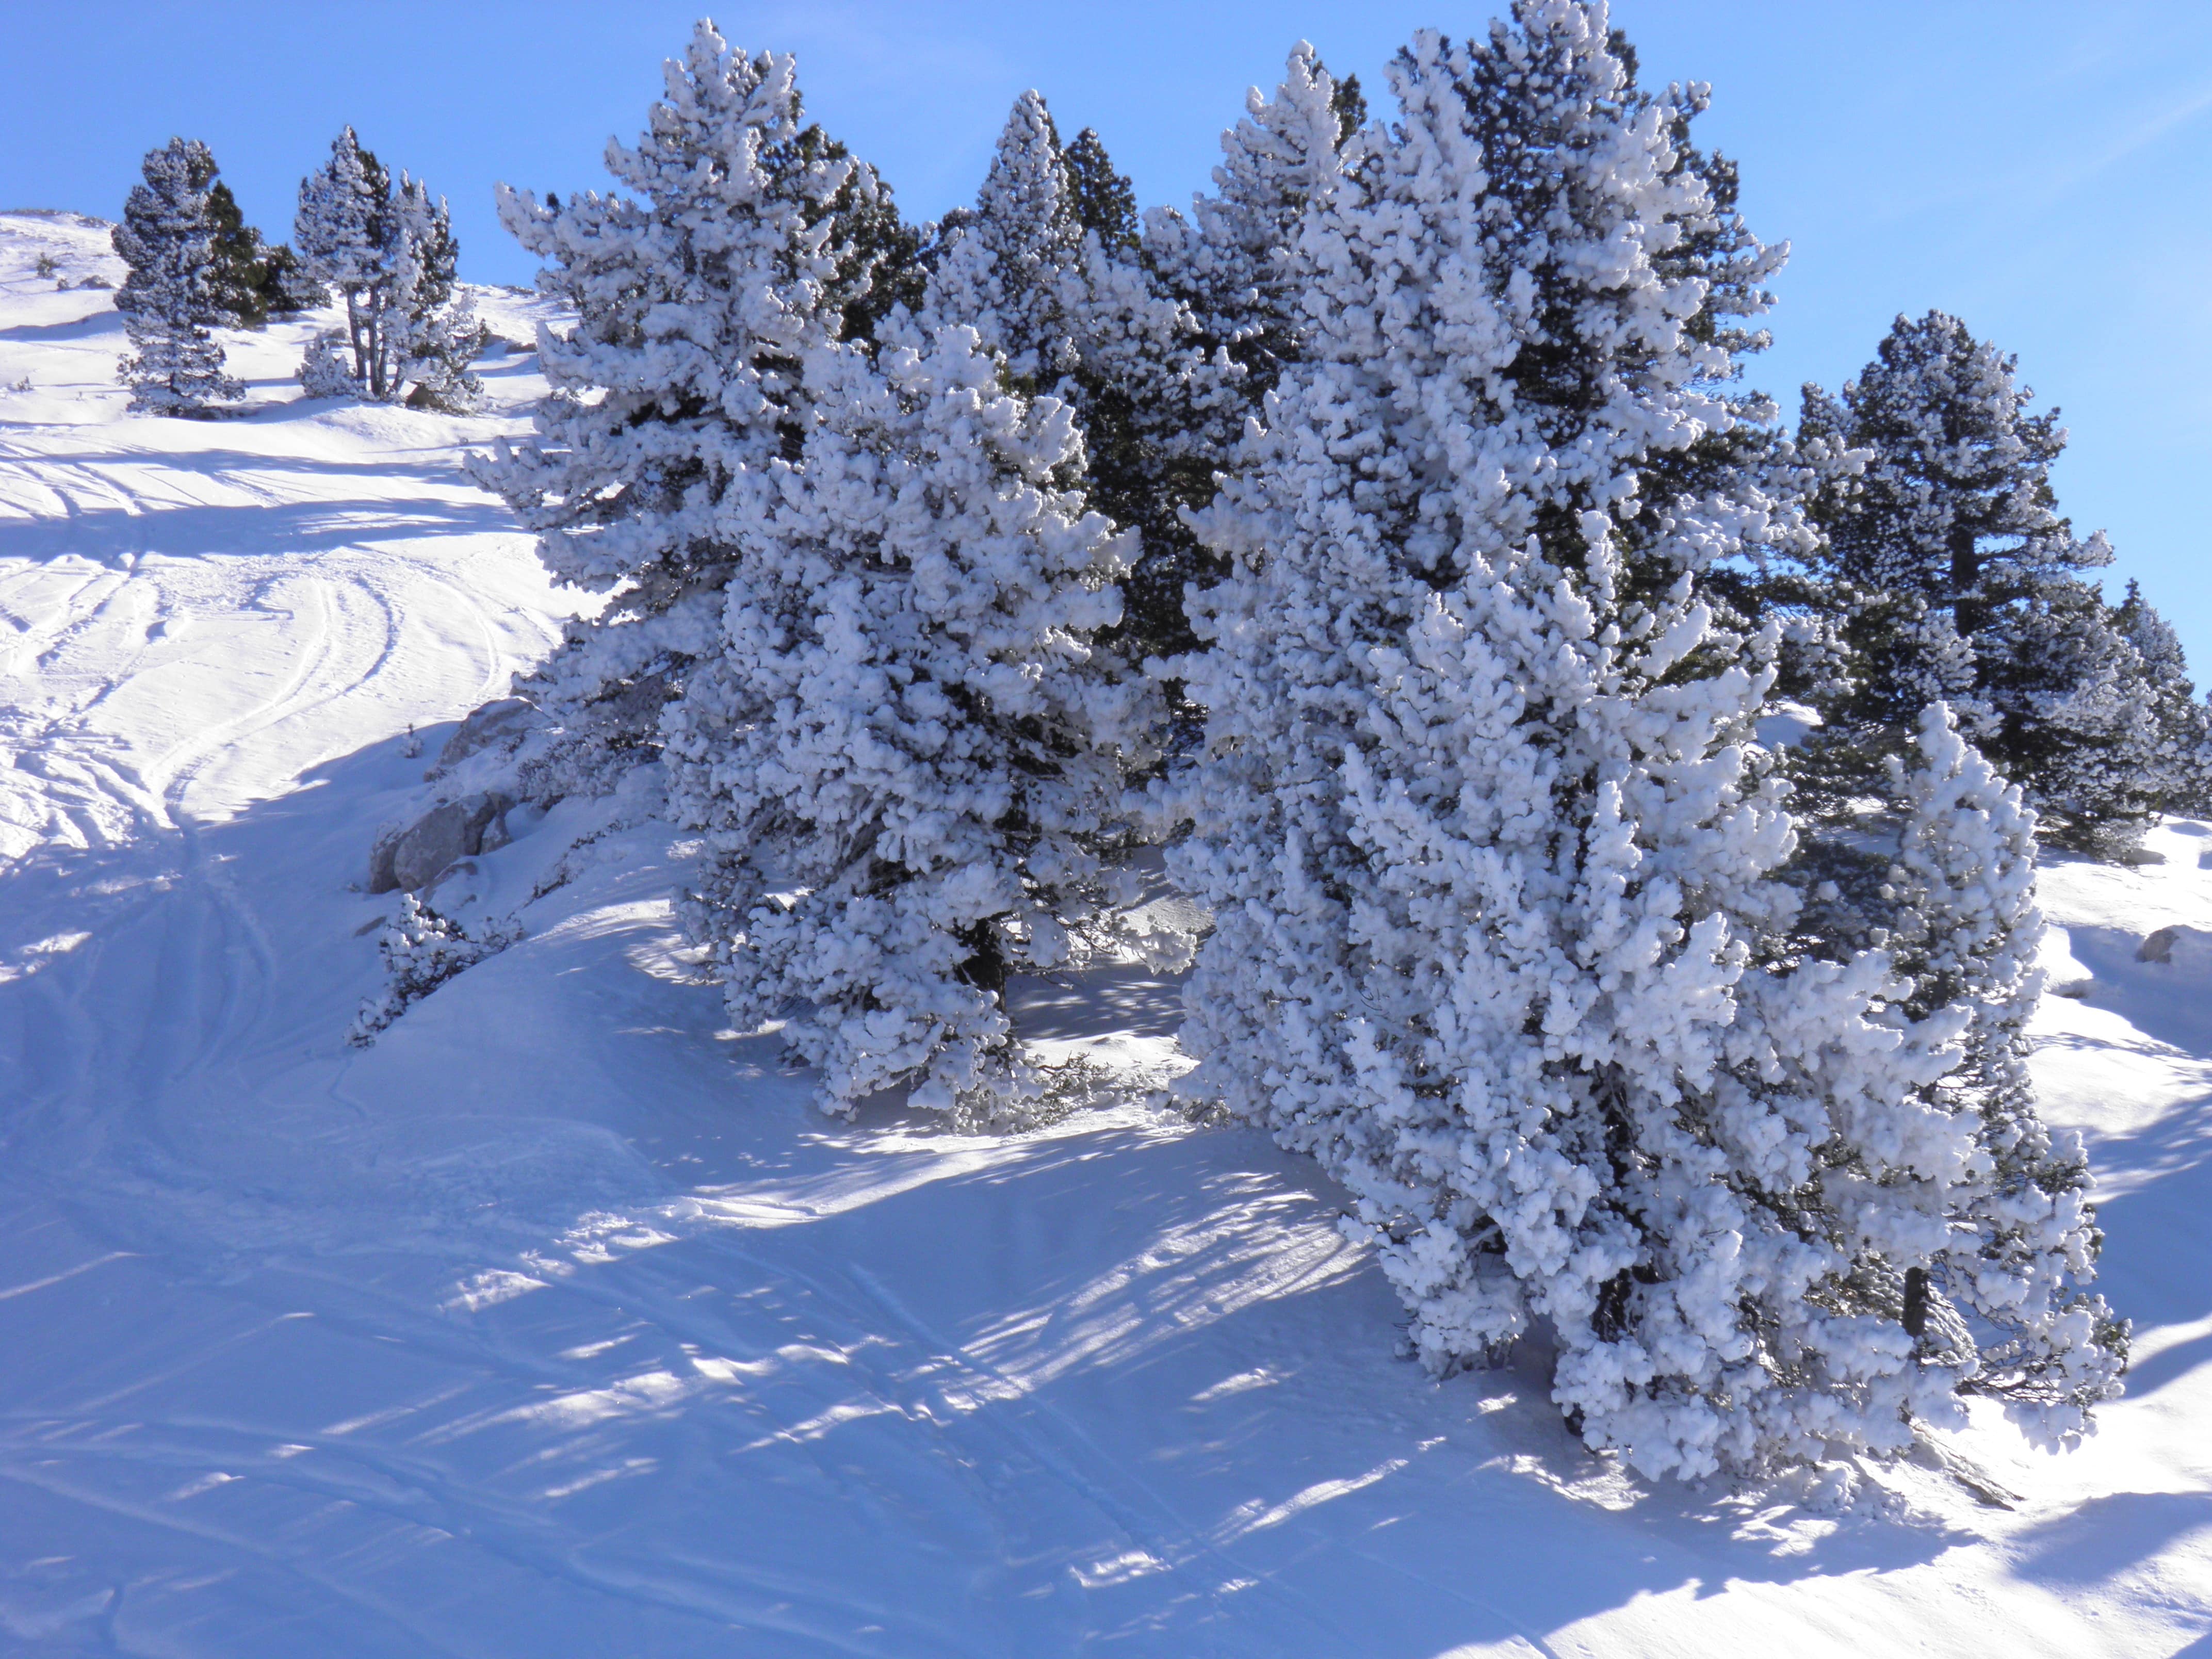 Ski slope, Villard-de-Lans, France